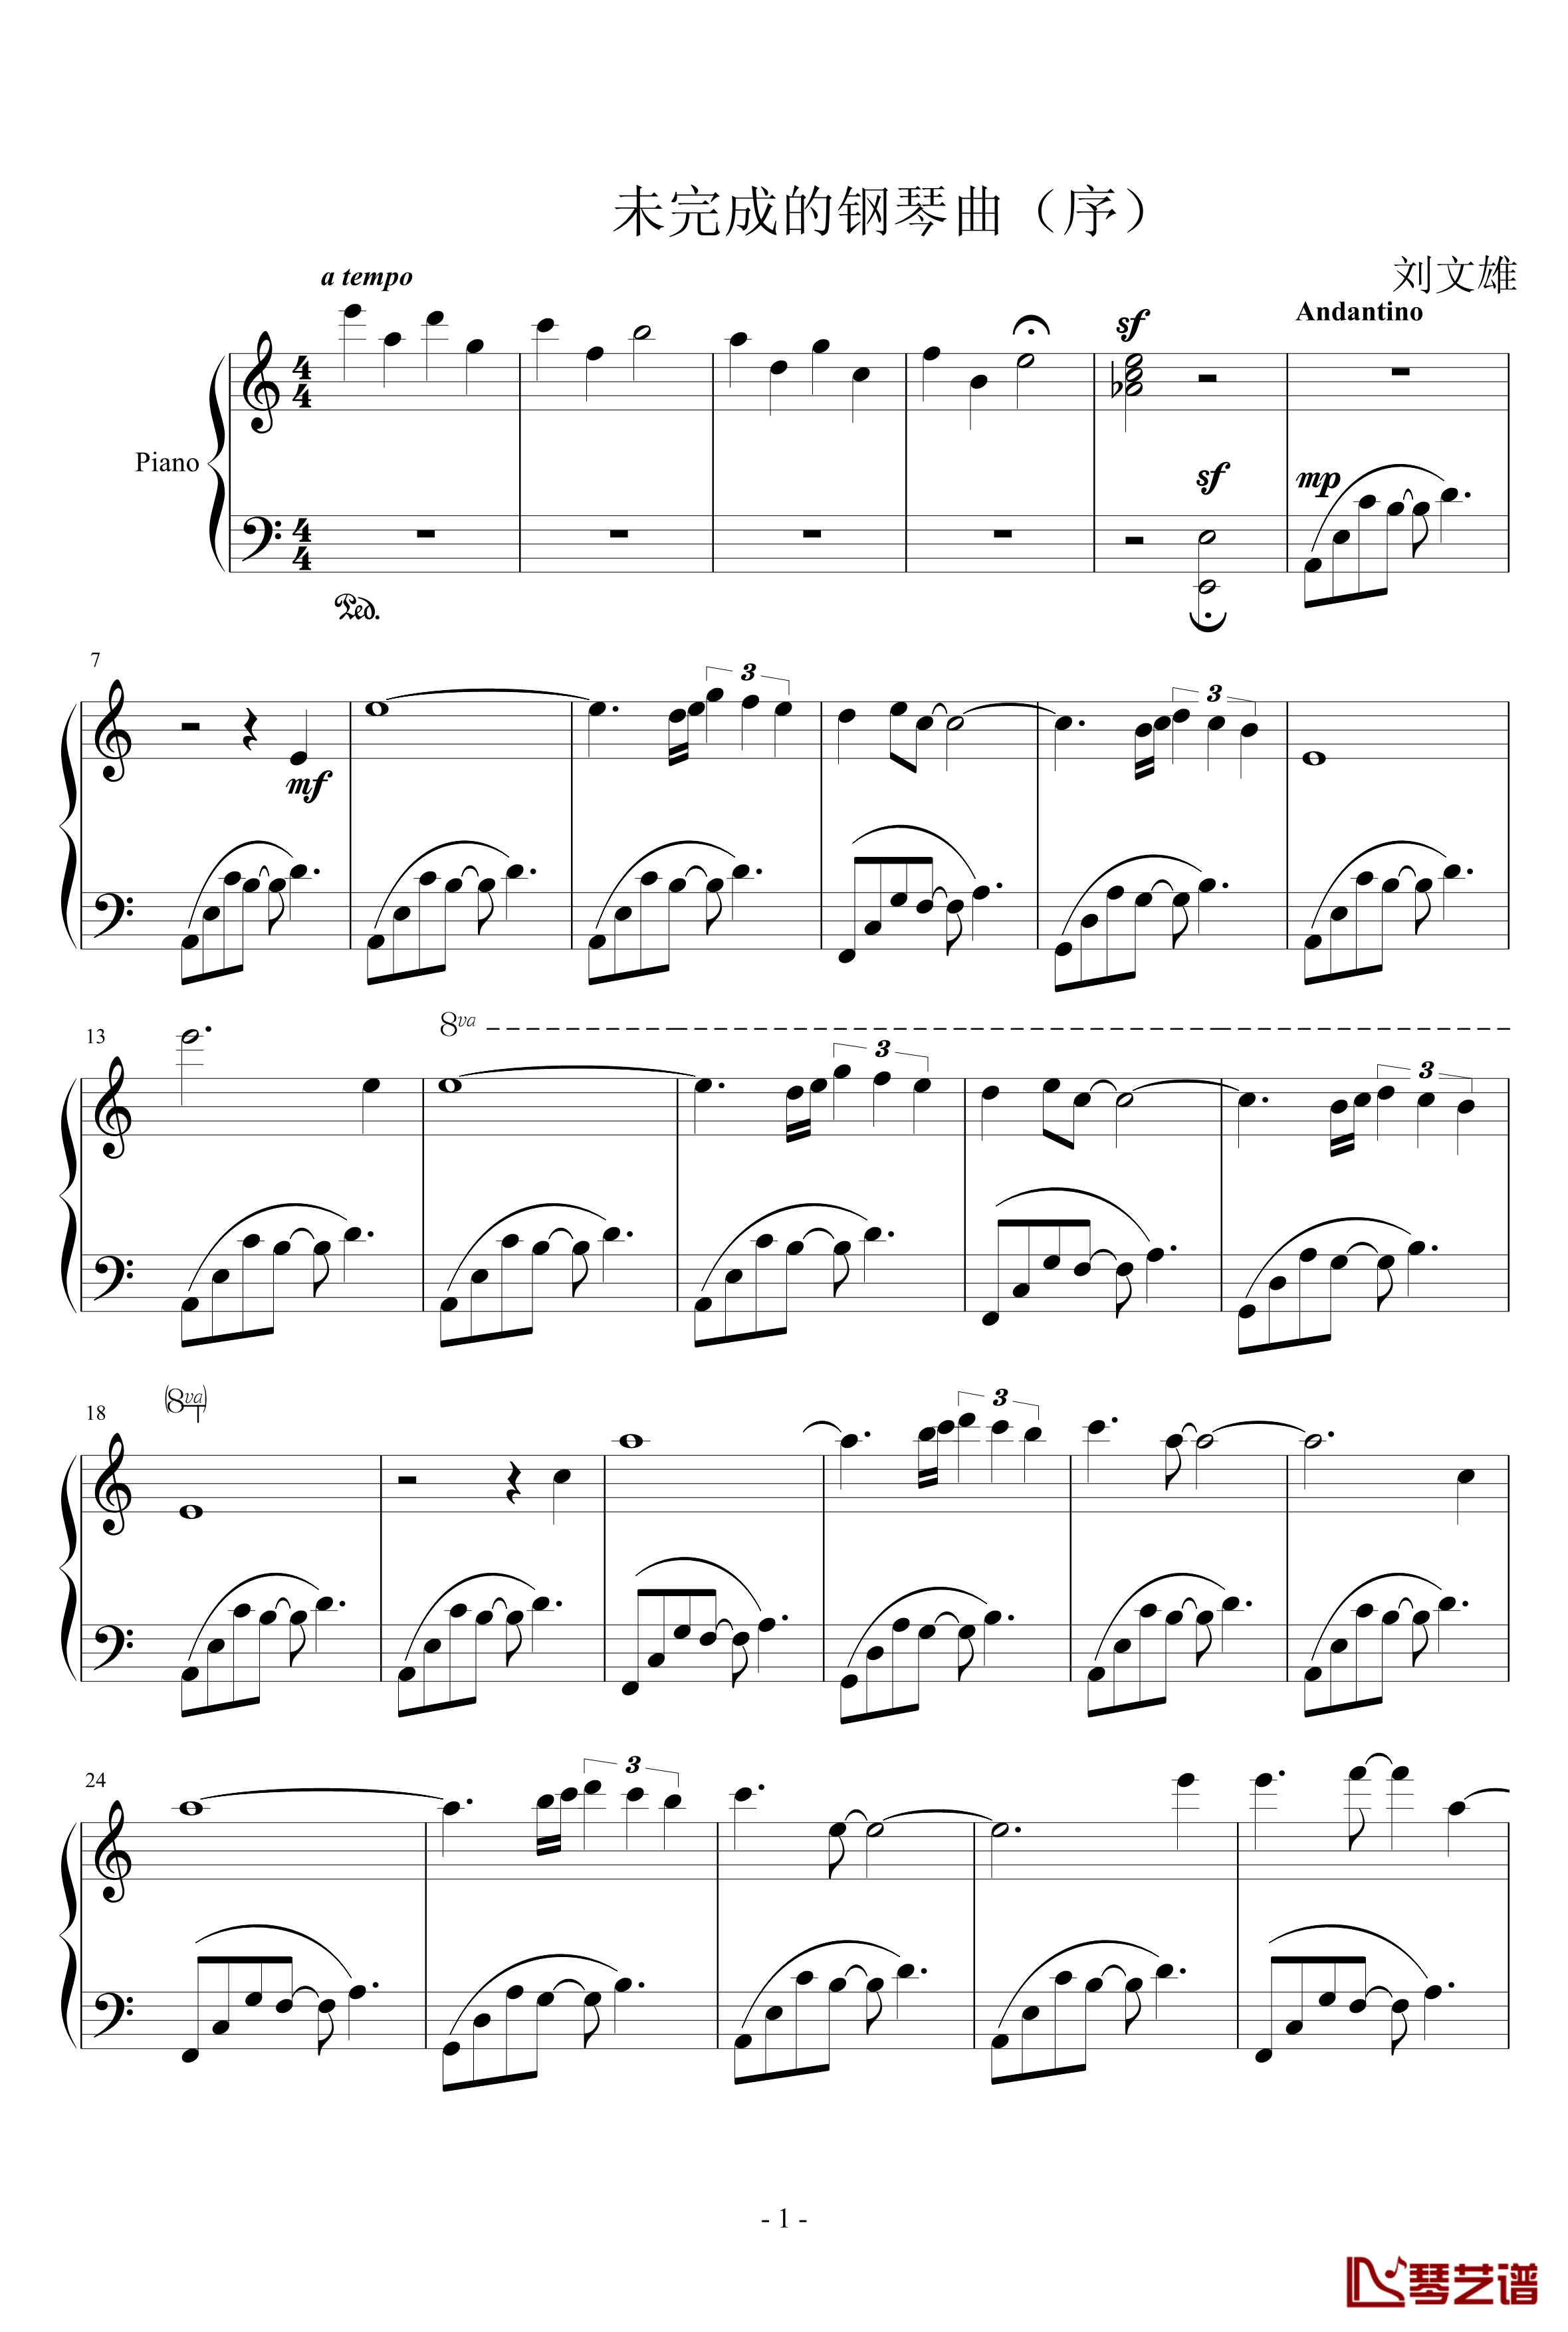 未完成的钢琴曲钢琴谱-序-lwxchutian1